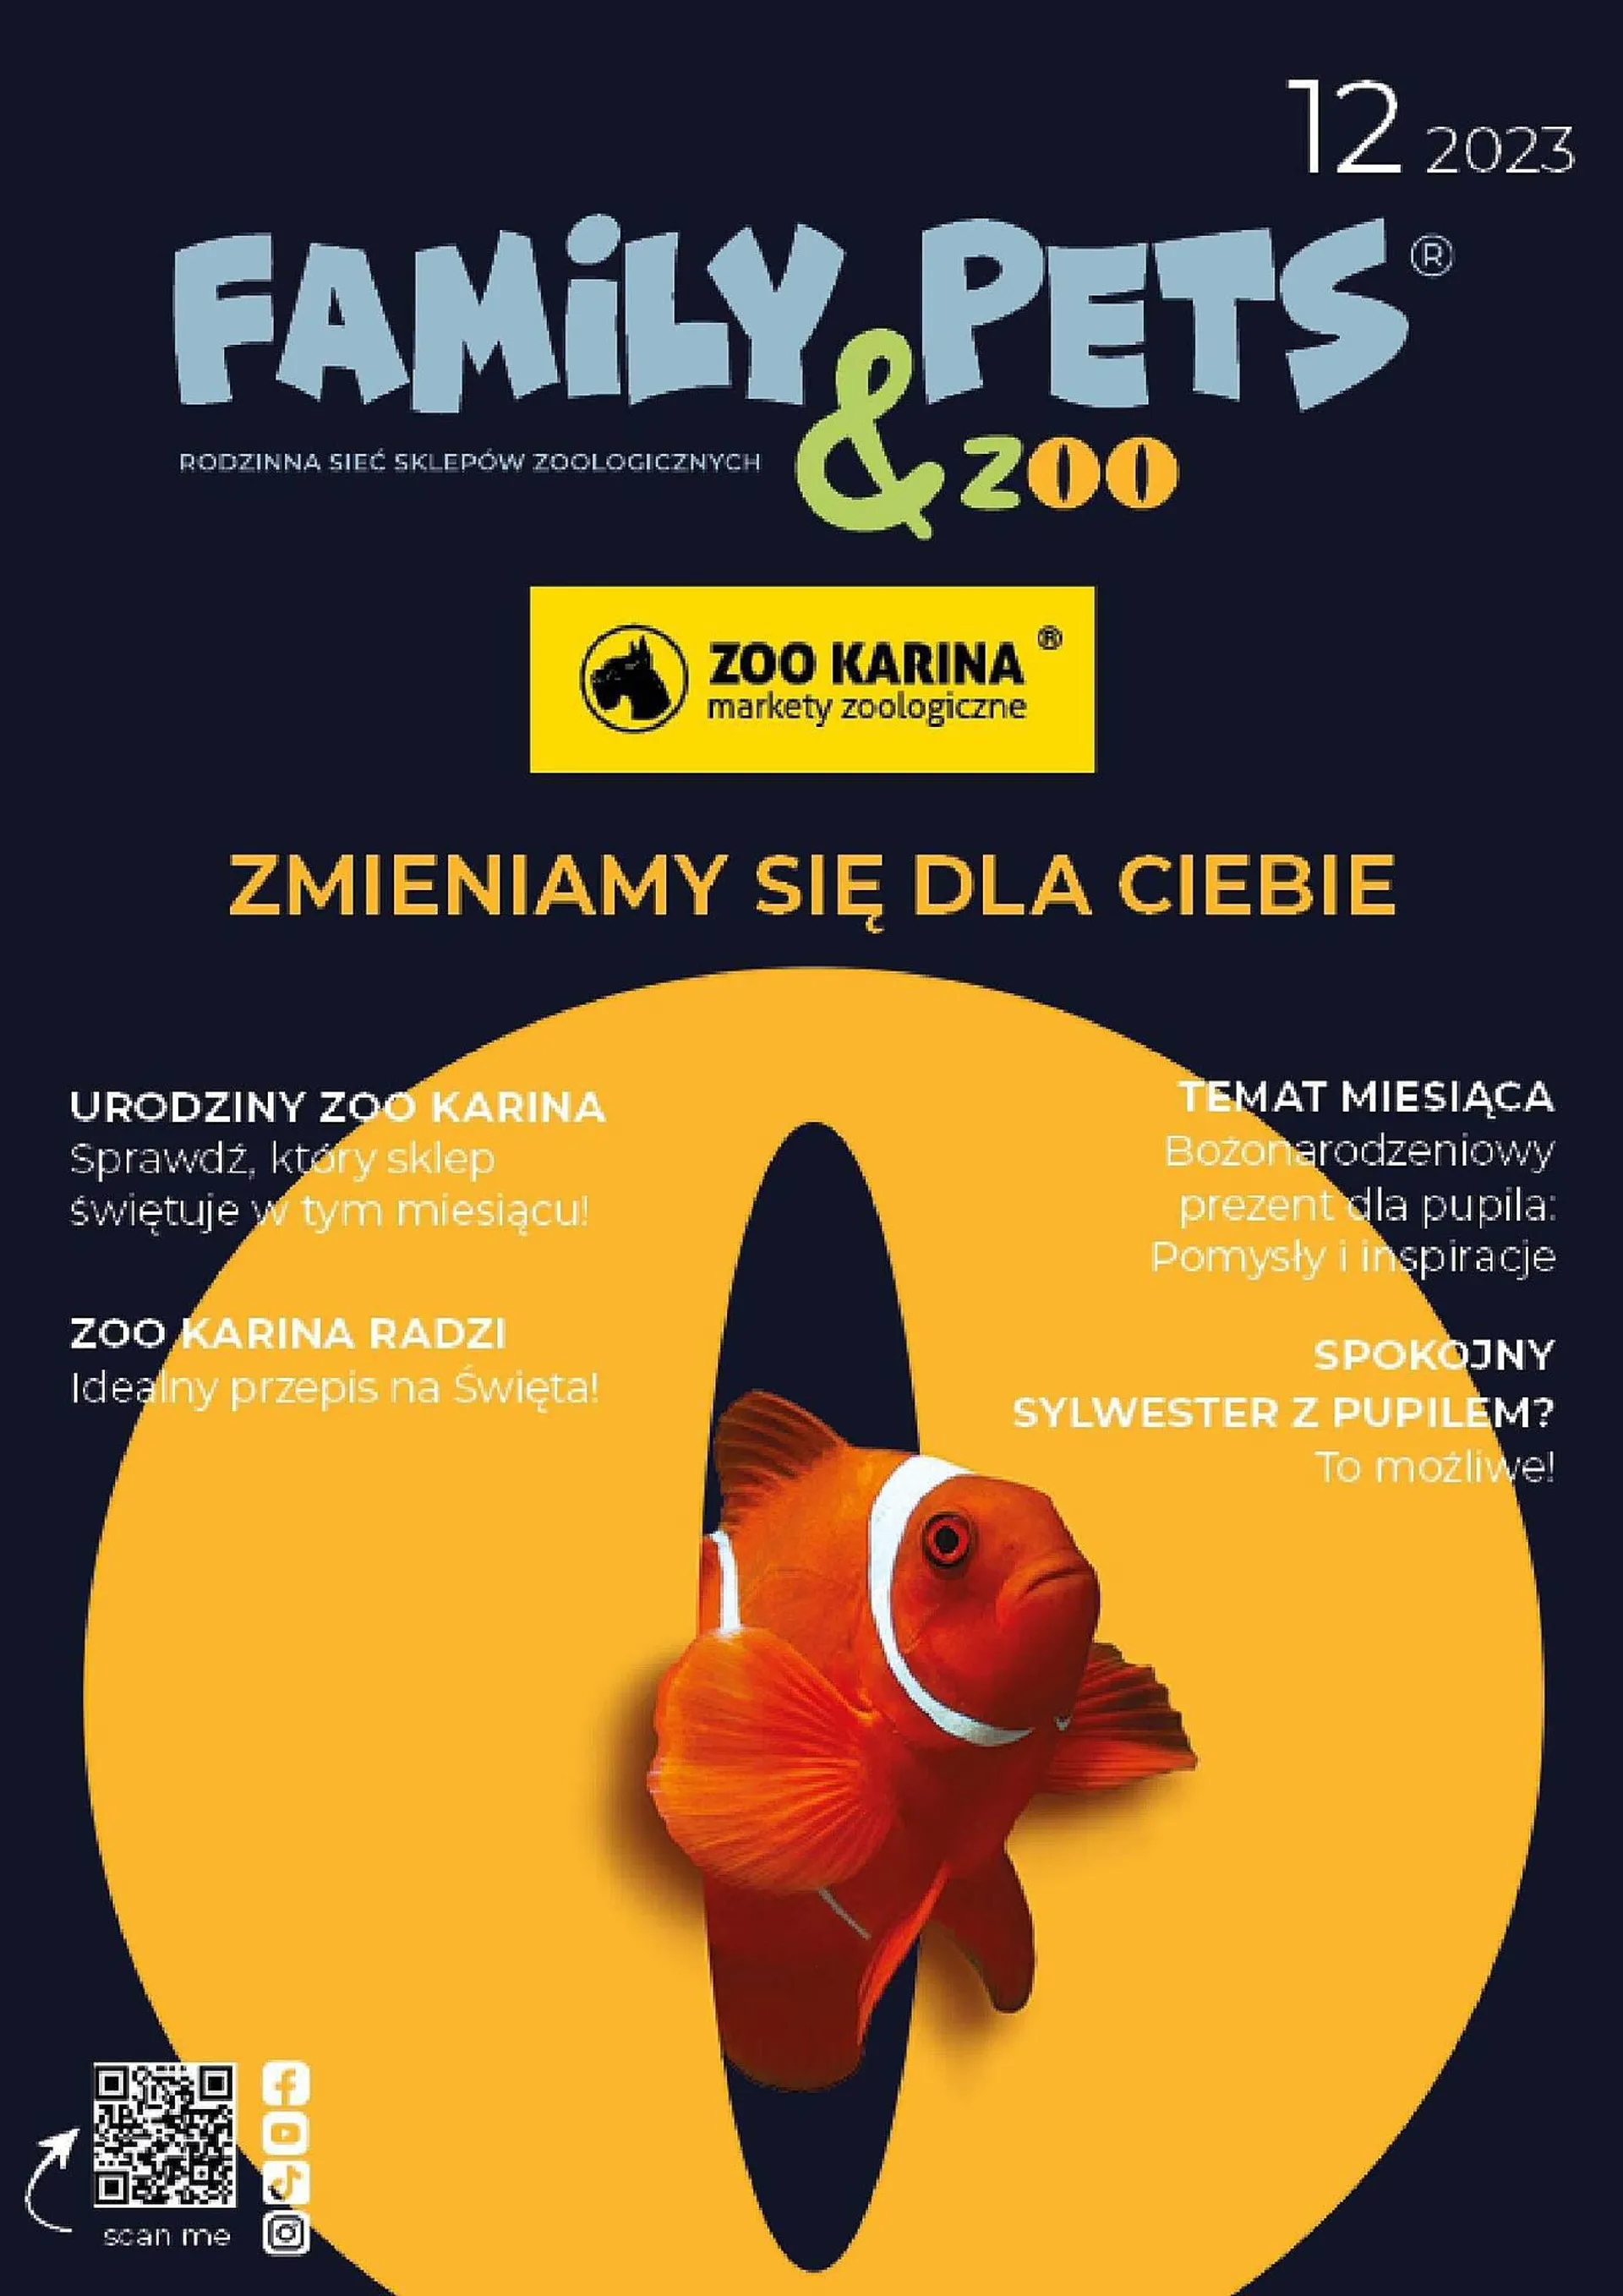 Zoo Karina gazetka